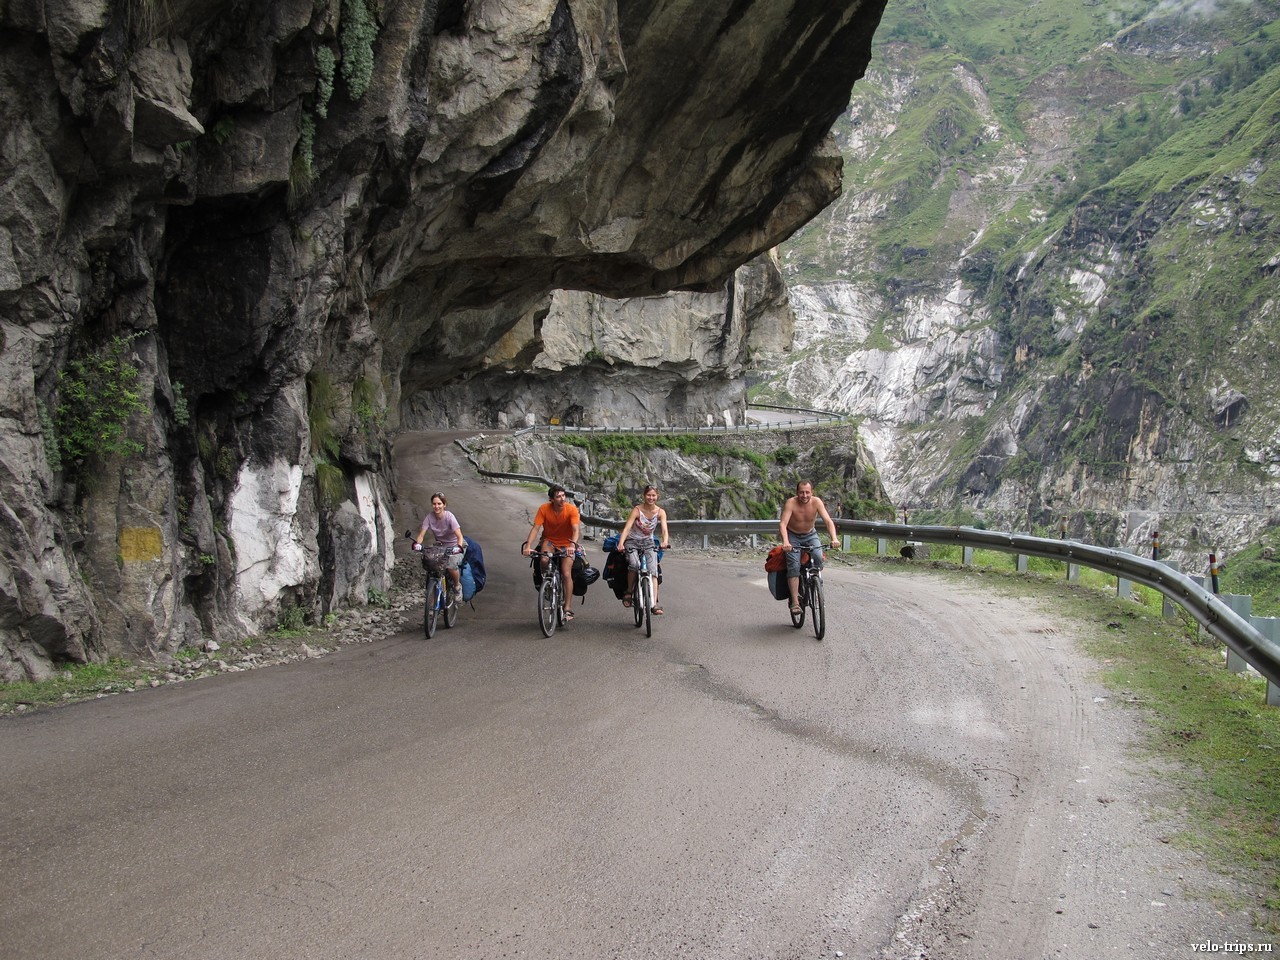 Himalayan road cutting in the rock